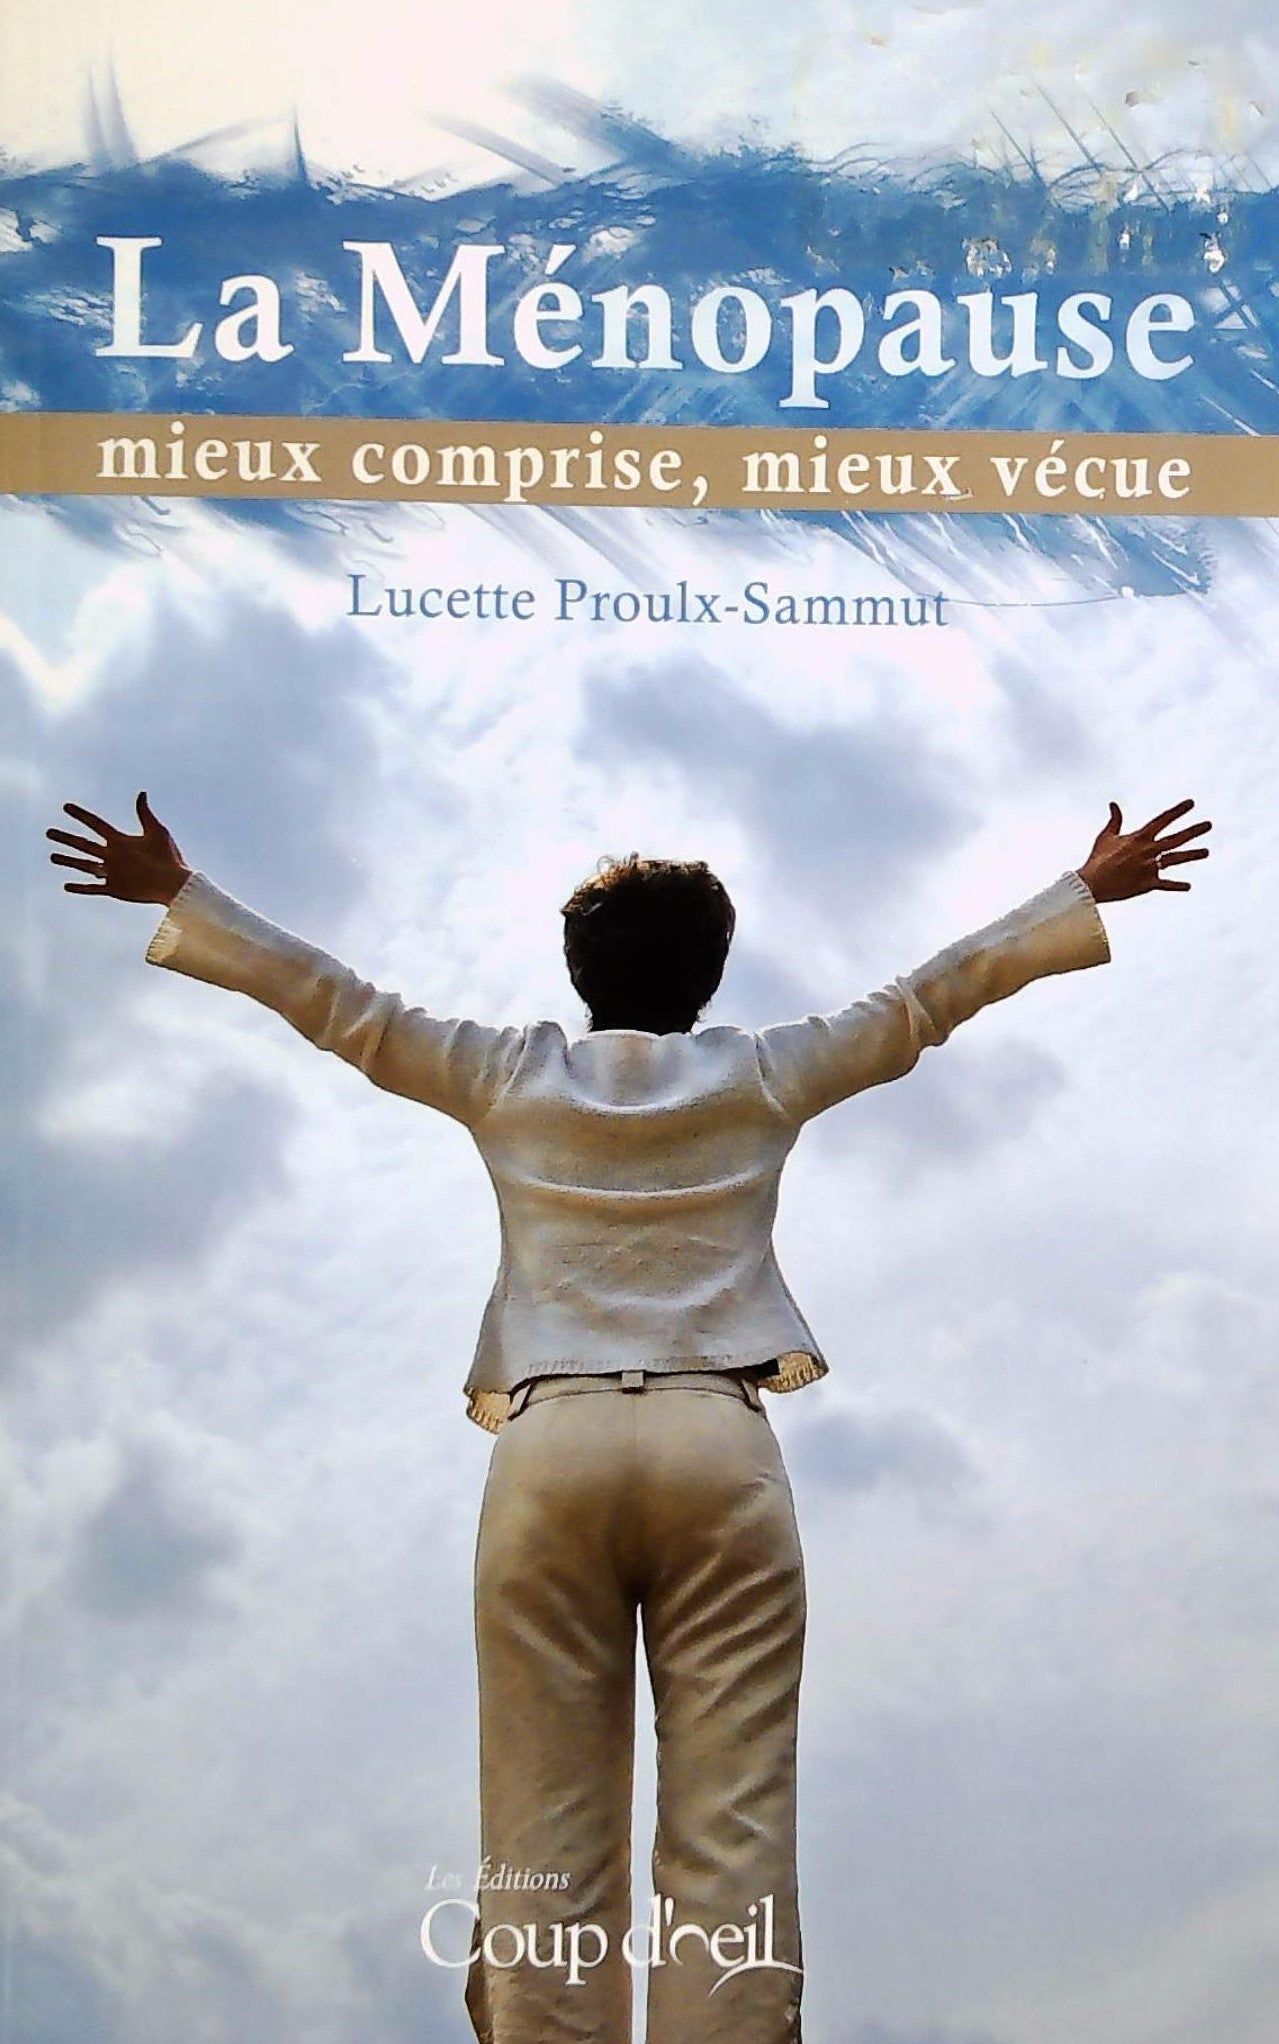 Livre ISBN 2896386114 La ménopause mieux comprise, mieux vécue (Lucette Proulx-Sammut)